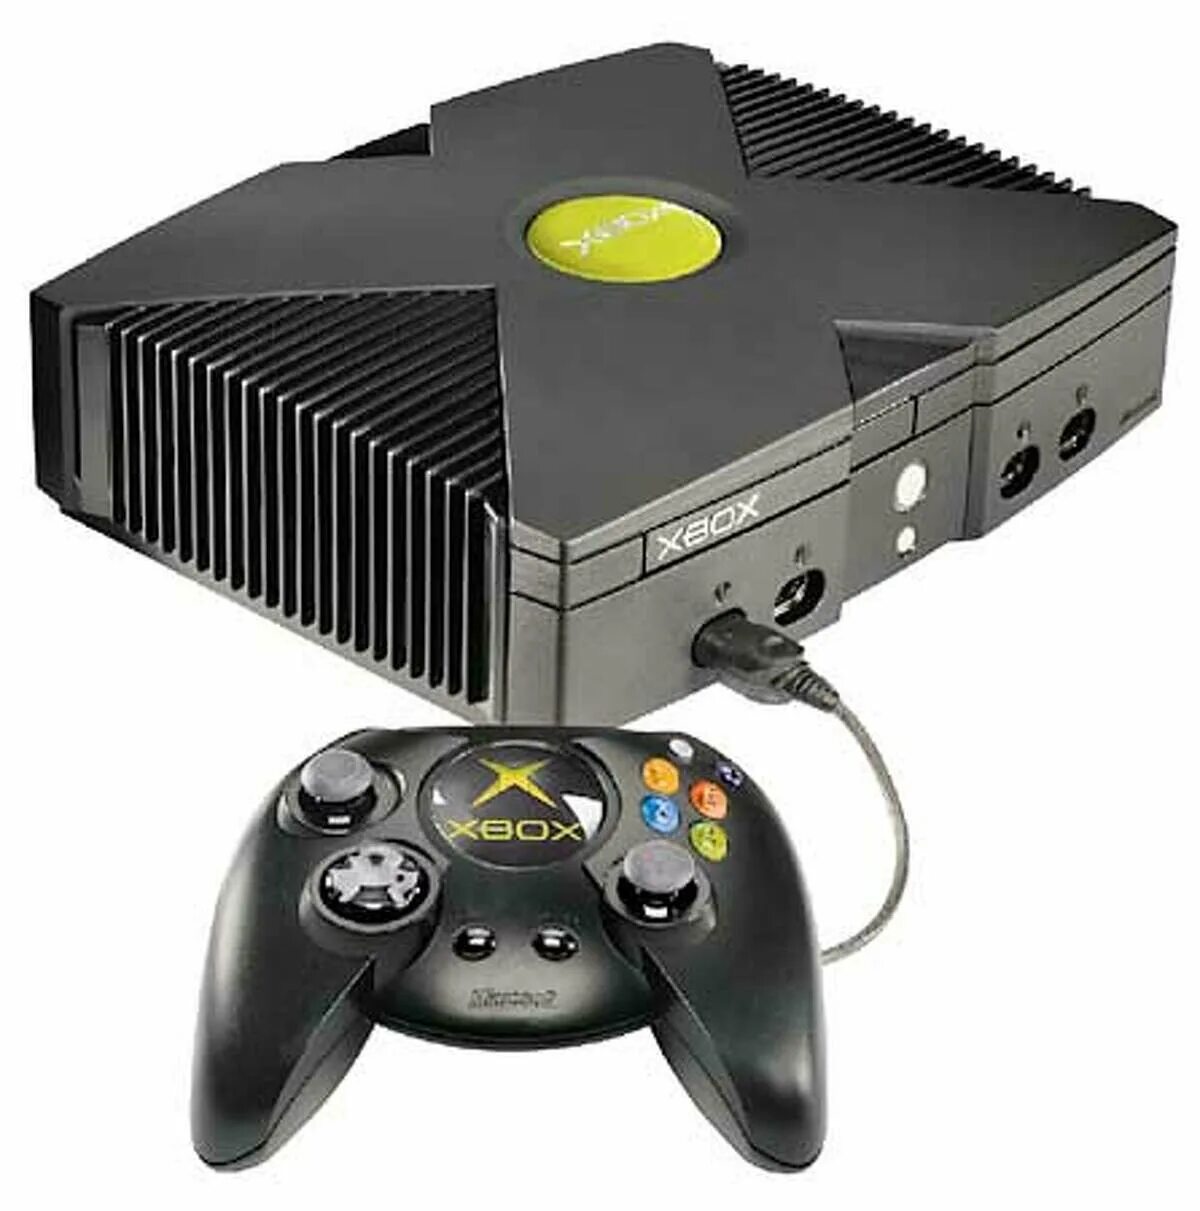 Модели хбокс. Xbox 2000. Xbox 2001. Самый первый Xbox 360. Игровая приставка Xbox 2001.